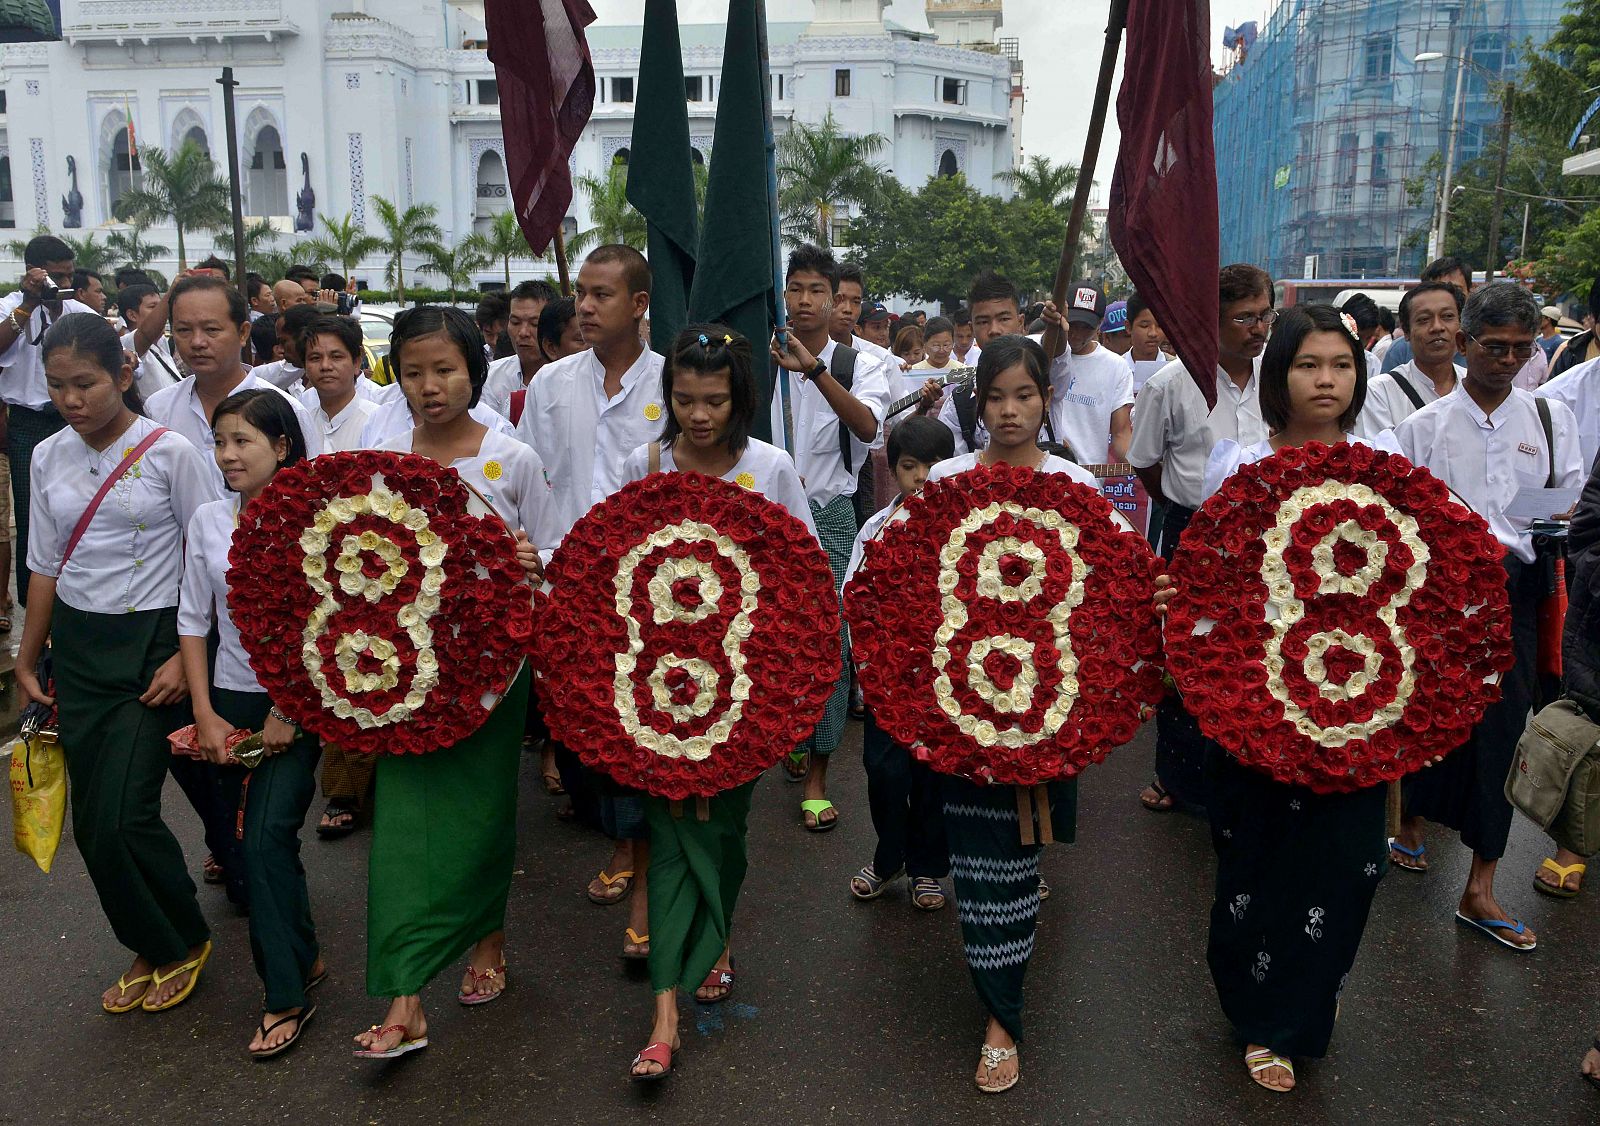 Estudiantes llevan cuatro coronas de flores que forman el número 8888, en homenaje a los miles de muertos tras la revuelta estudiantil birmana iniciada hace 25 años, el 8 de agosto de 1988 (8/8/88).